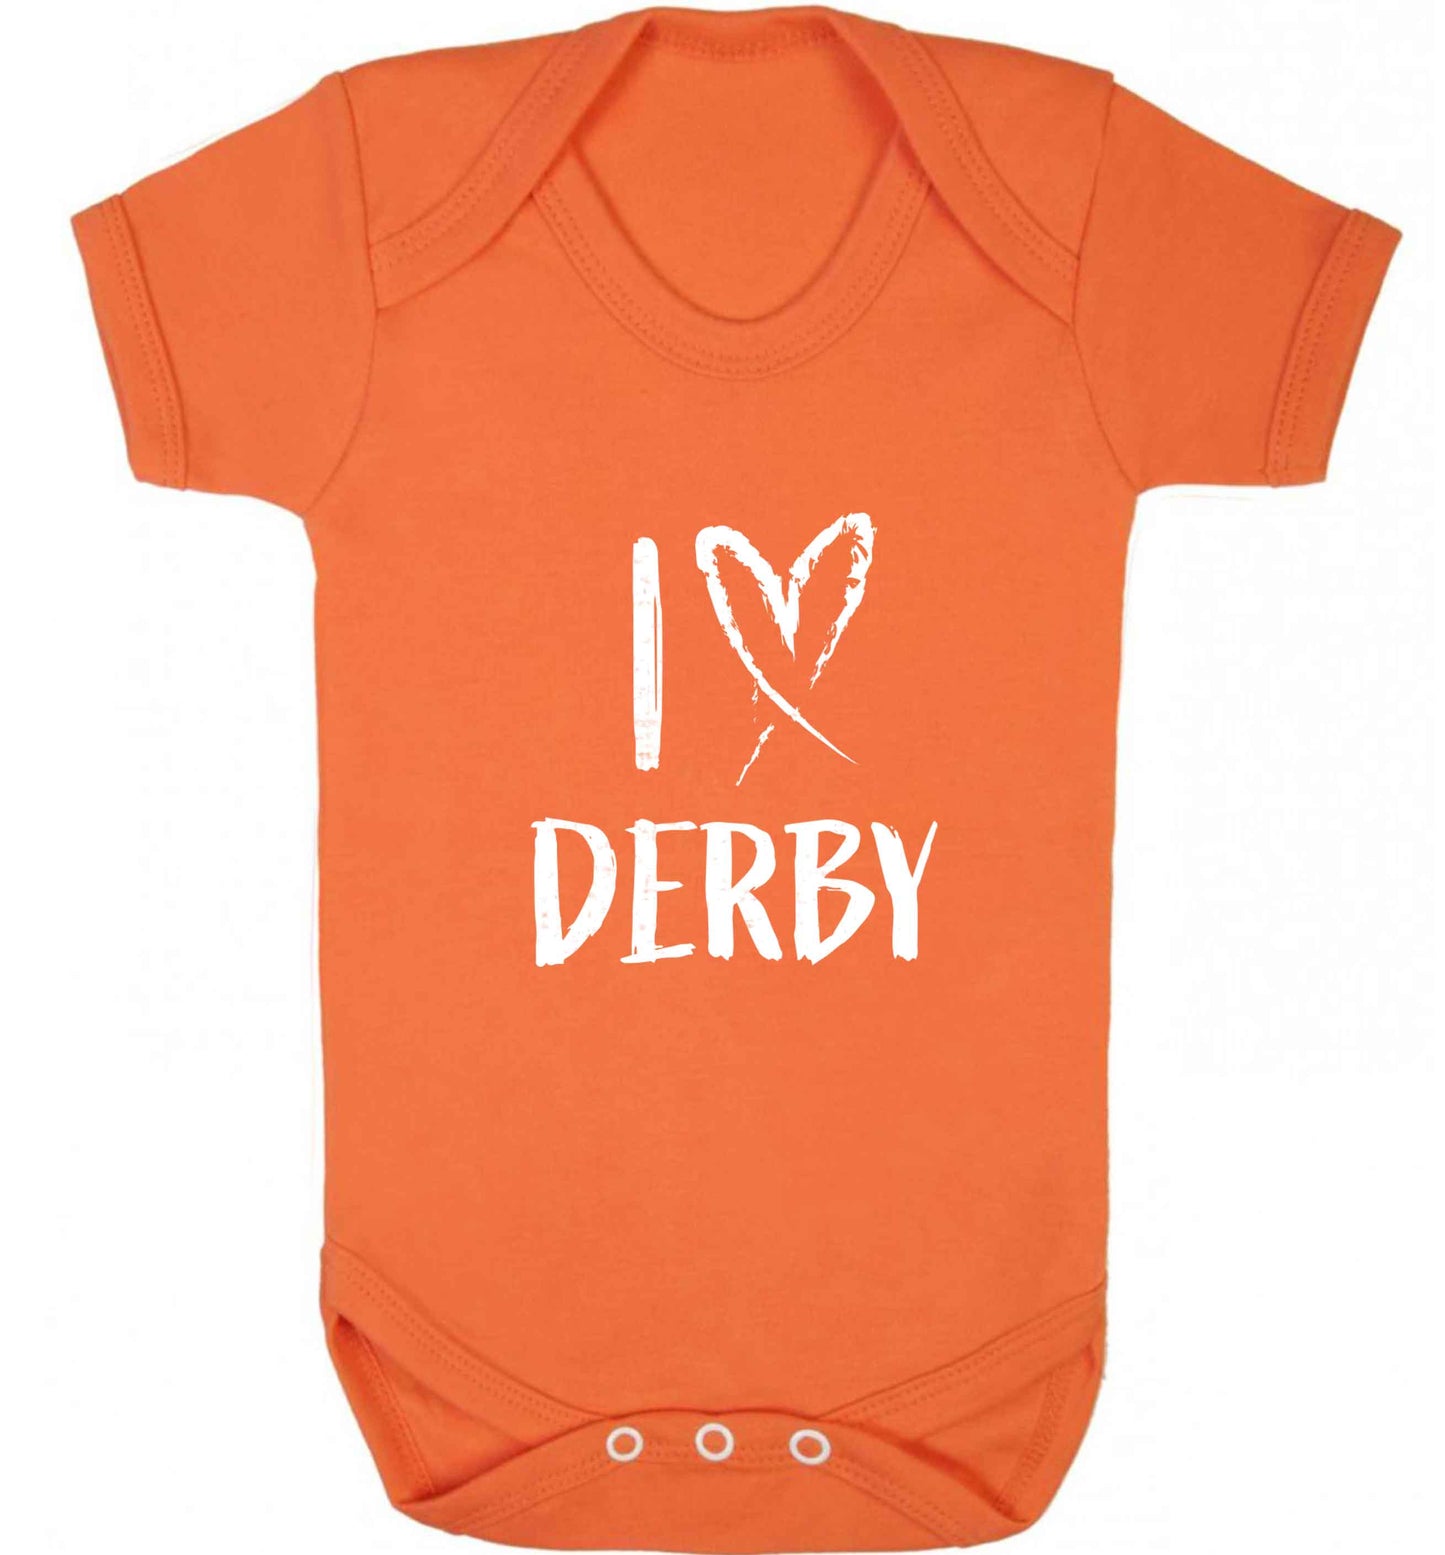 I love Derby baby vest orange 18-24 months